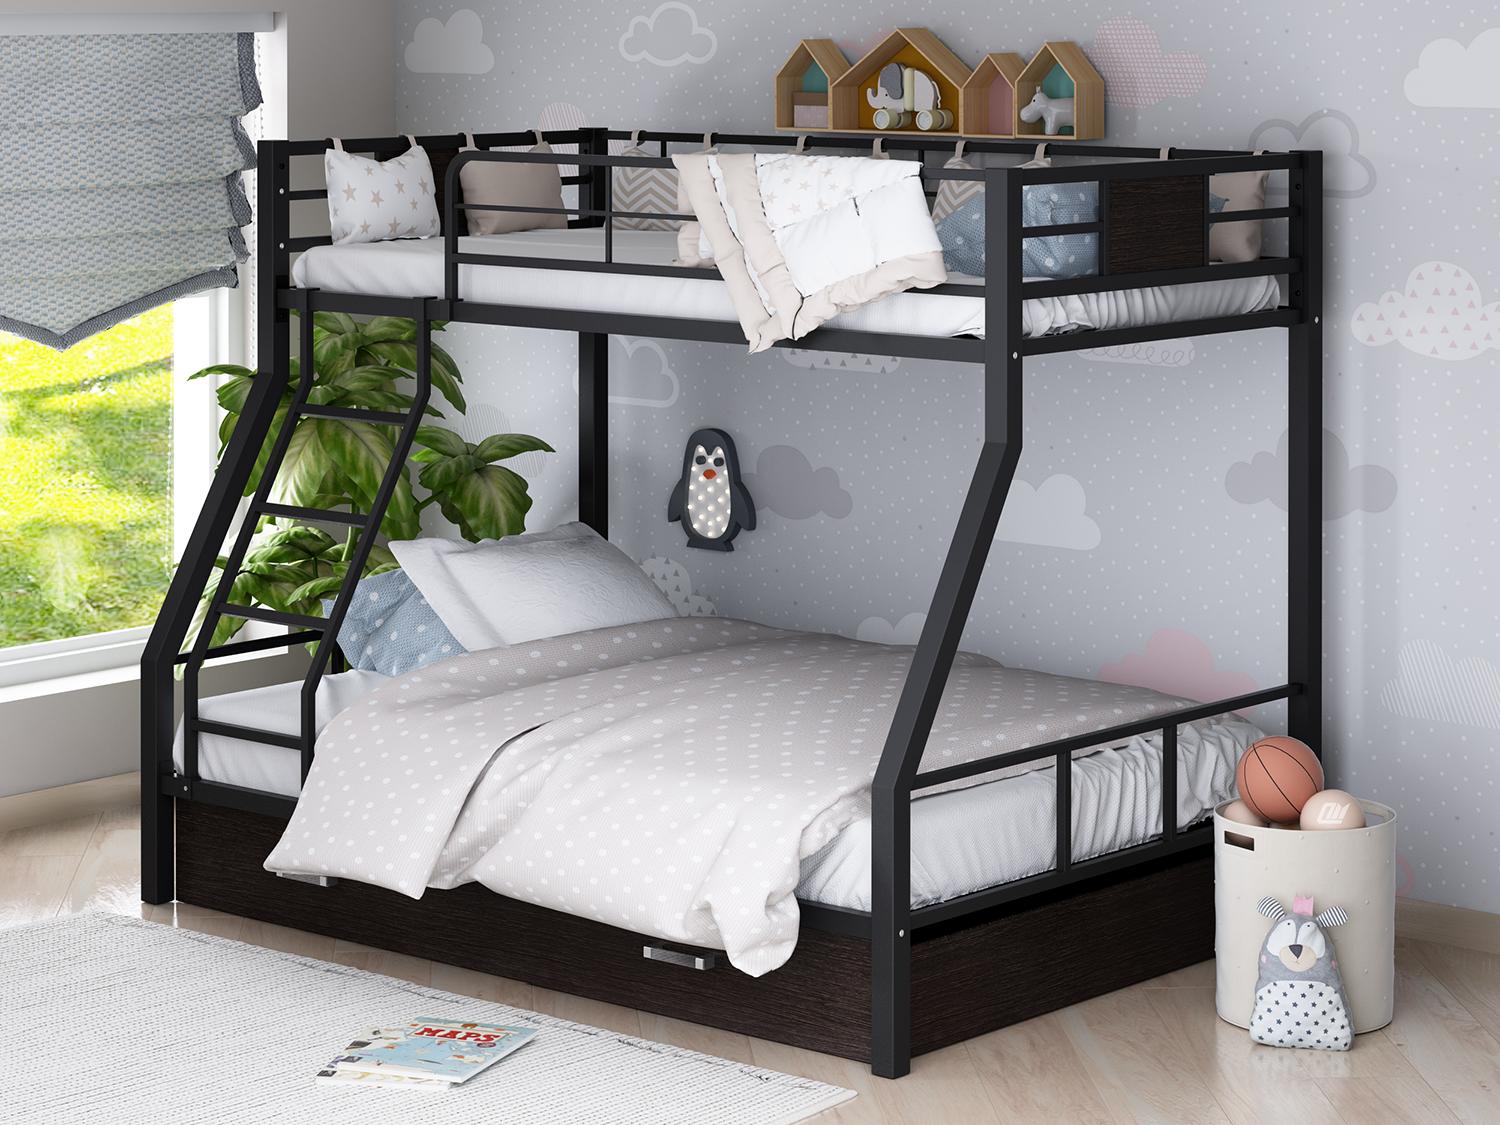 Детские двухъярусные кровати — самые популярные варианты для детей и подростков (70 фото)